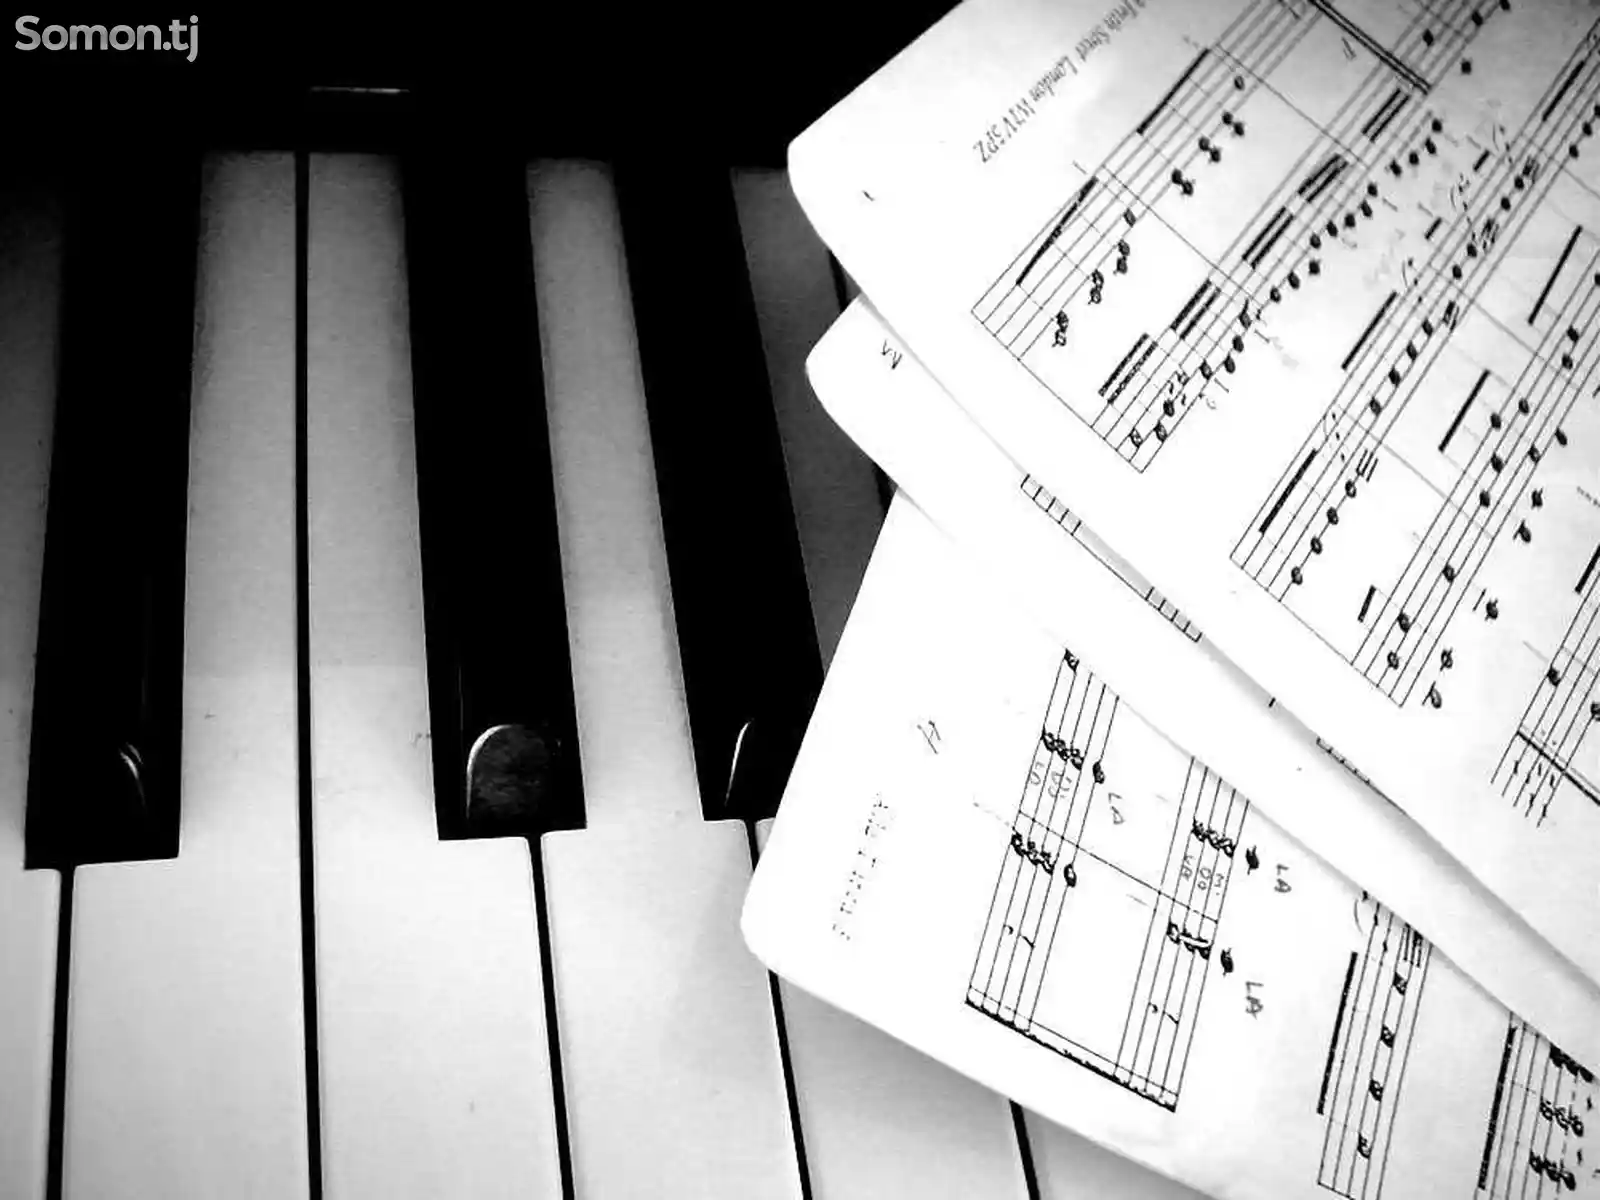 Курсы по обучению игре на фортепиано